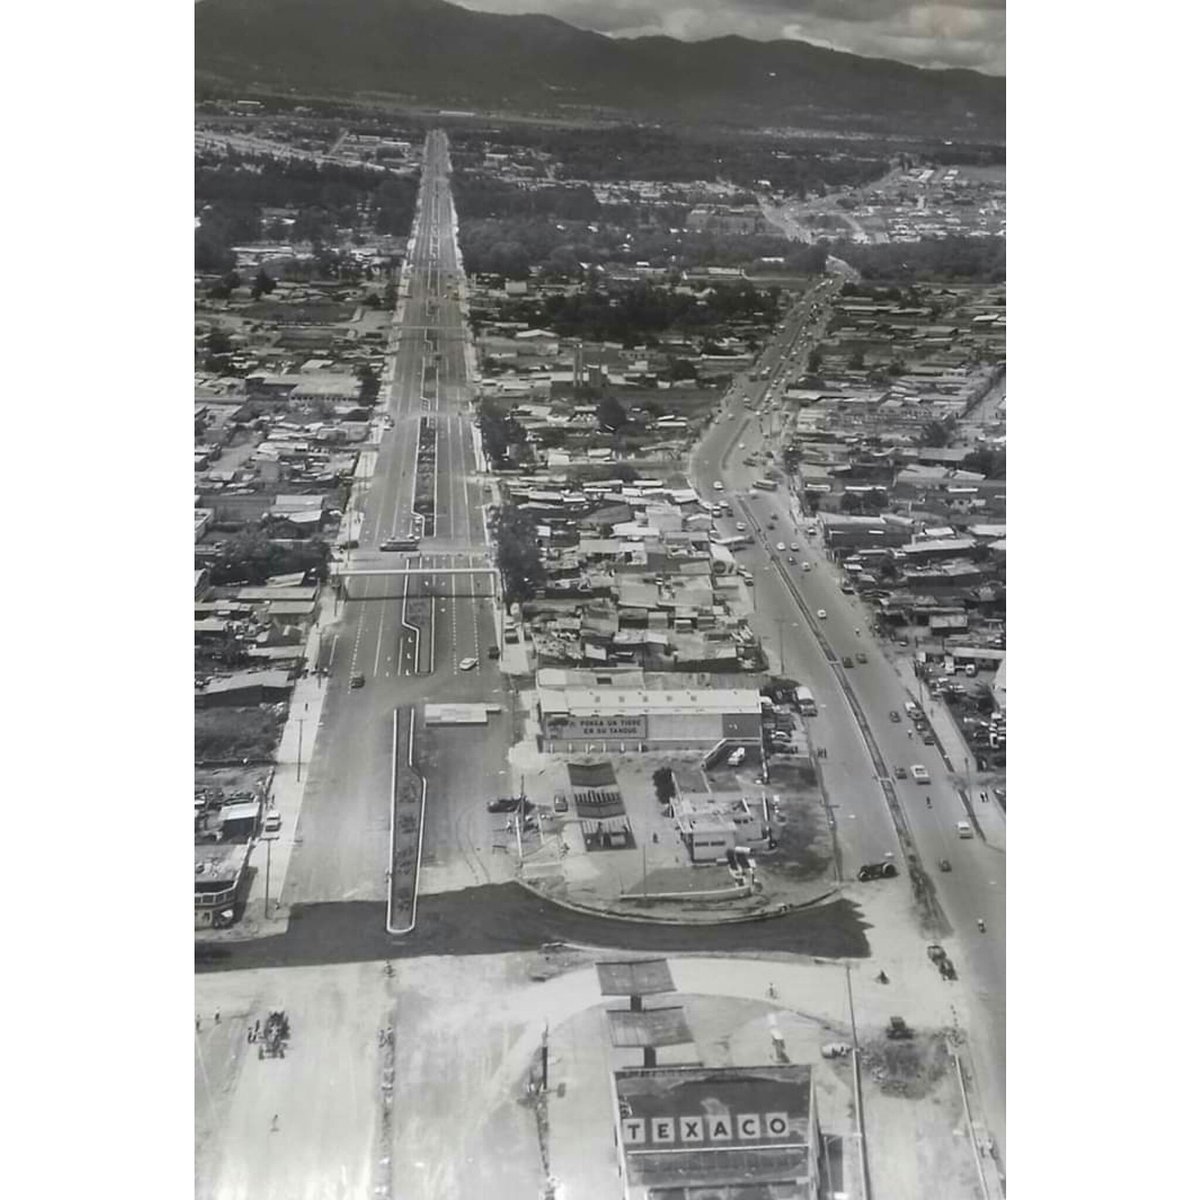 Imagen del recuerdo. Inicio de la #Roosevelt y #CalzadaSanJuan aquí en la Ciudad Capital de Guatemala. Si no estoy mal será más o menos allá por 1960
#photography
#photooftheday
#guatemalaantigua
#recuerdosdeguate
#fotoblancoynegro
#nostalgia
#chavorrucos
#radiografías